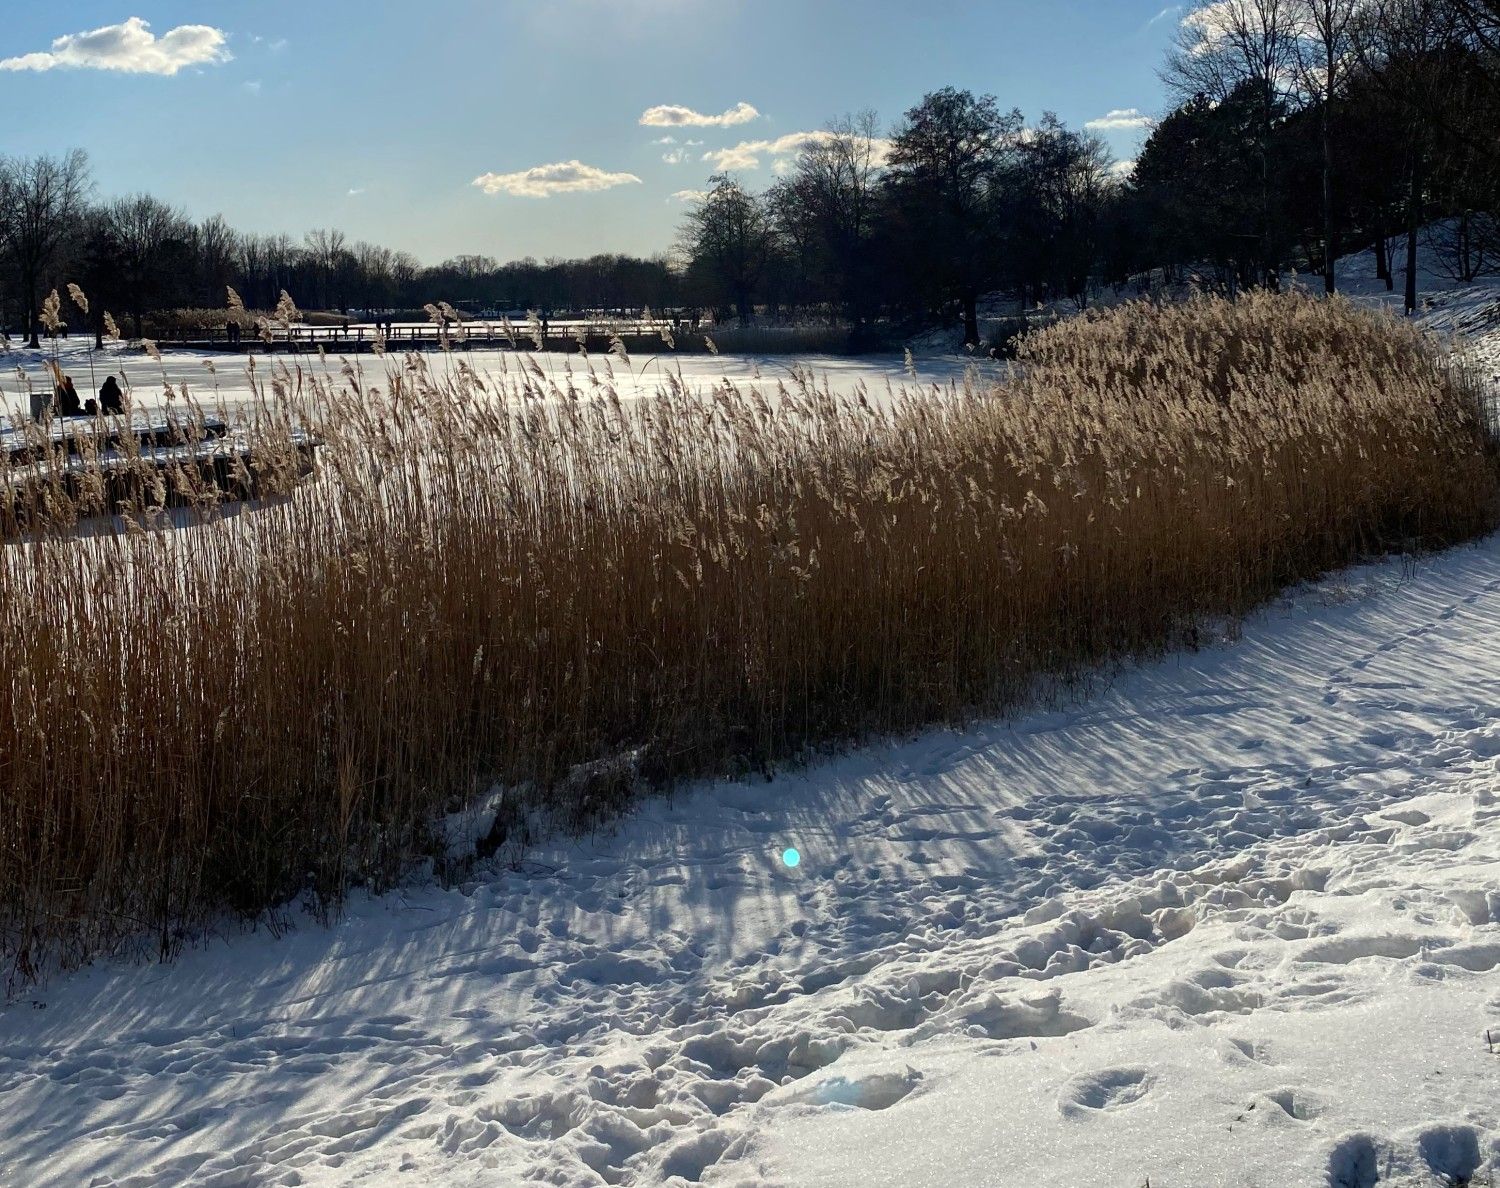 Im Vordergrund Schnee mit Fußabdrücken darin. Dahinter Schilf und ein zugefrorener See. Am Ufer kahle Bäume